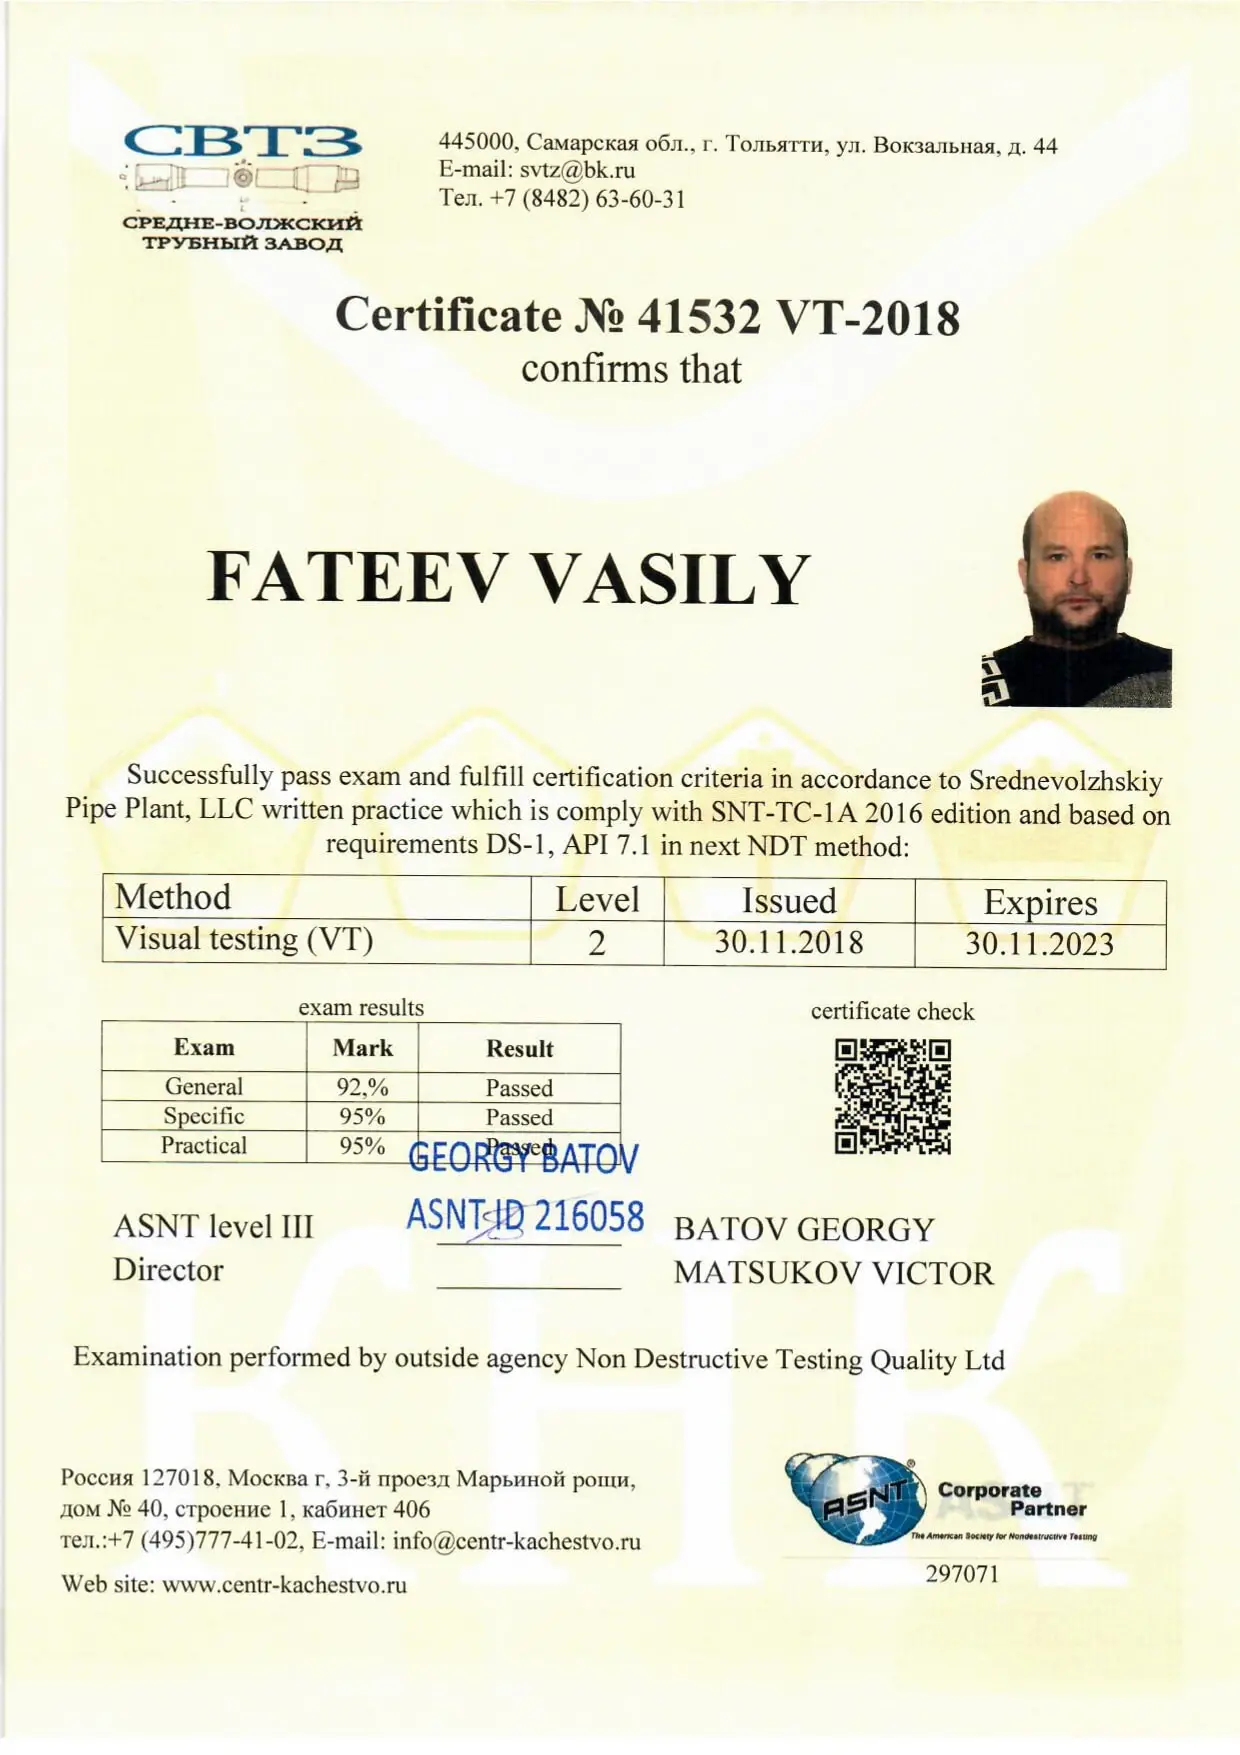 Фатеев сертификат 1